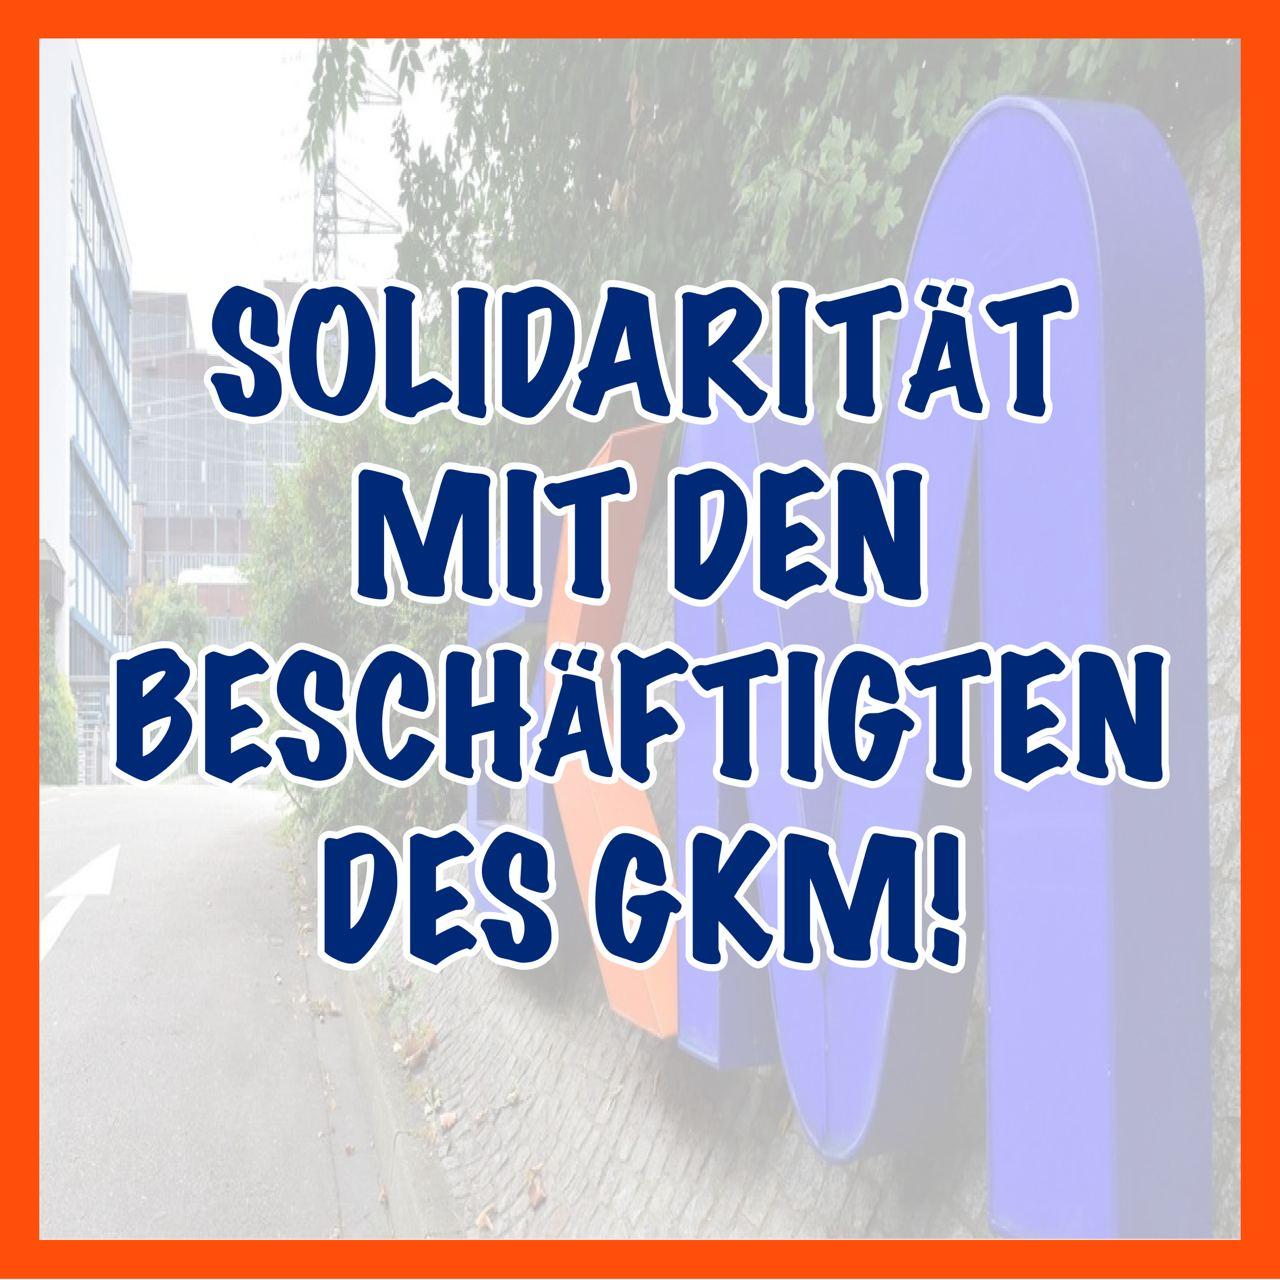 Solidarität mit den Beschäftigten des GKM!